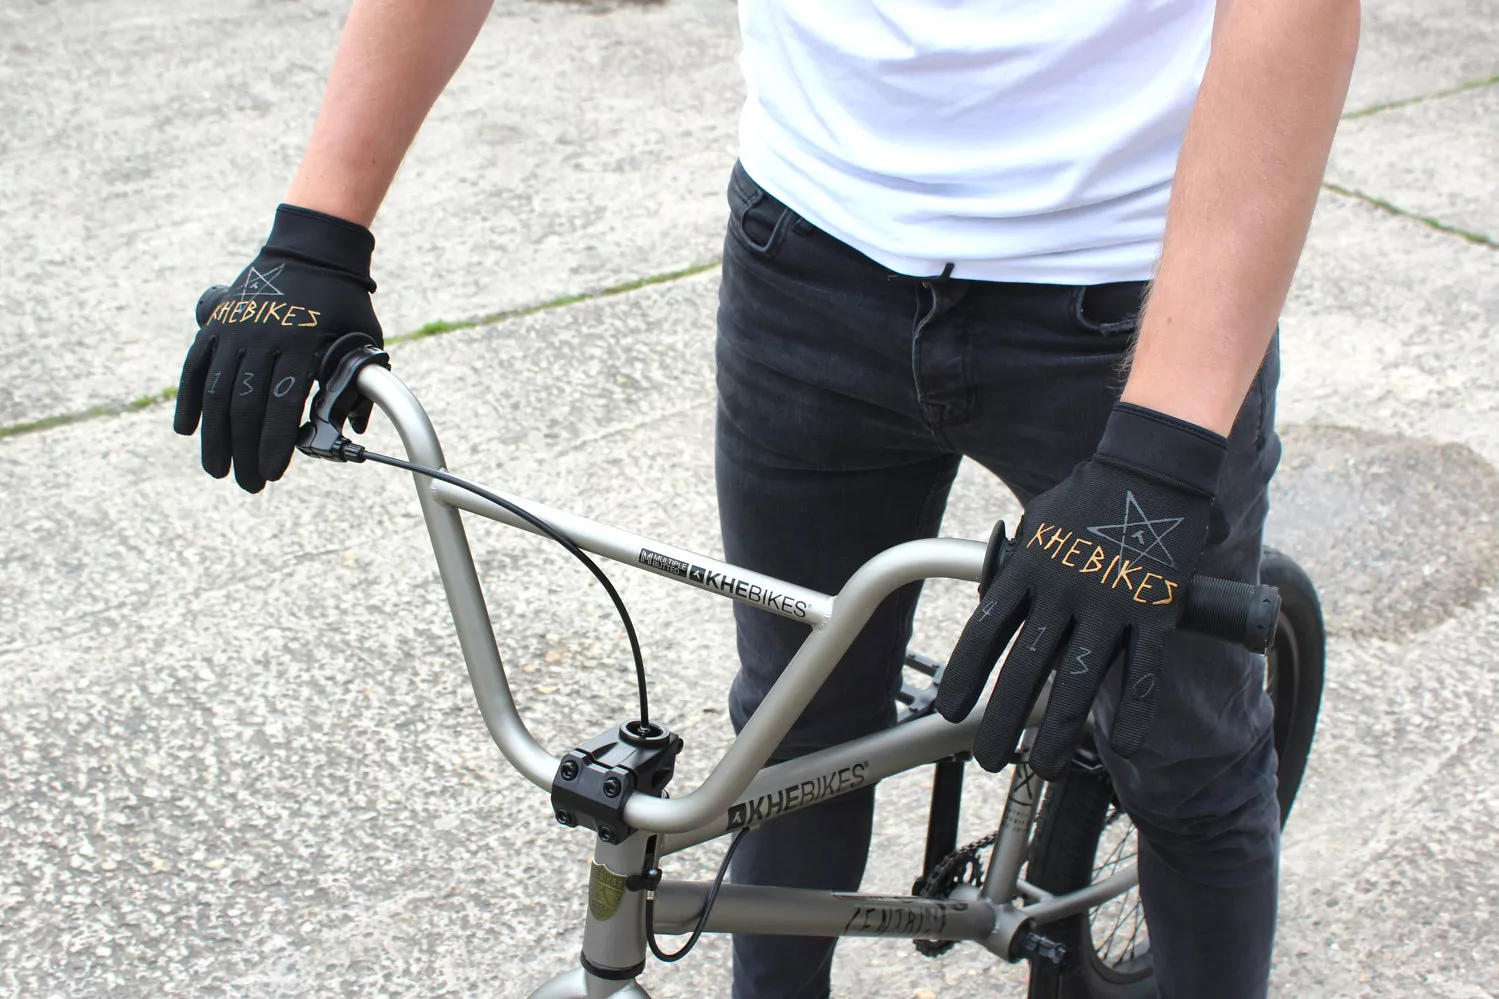 BMX Handschuhe KHE 4130 XS